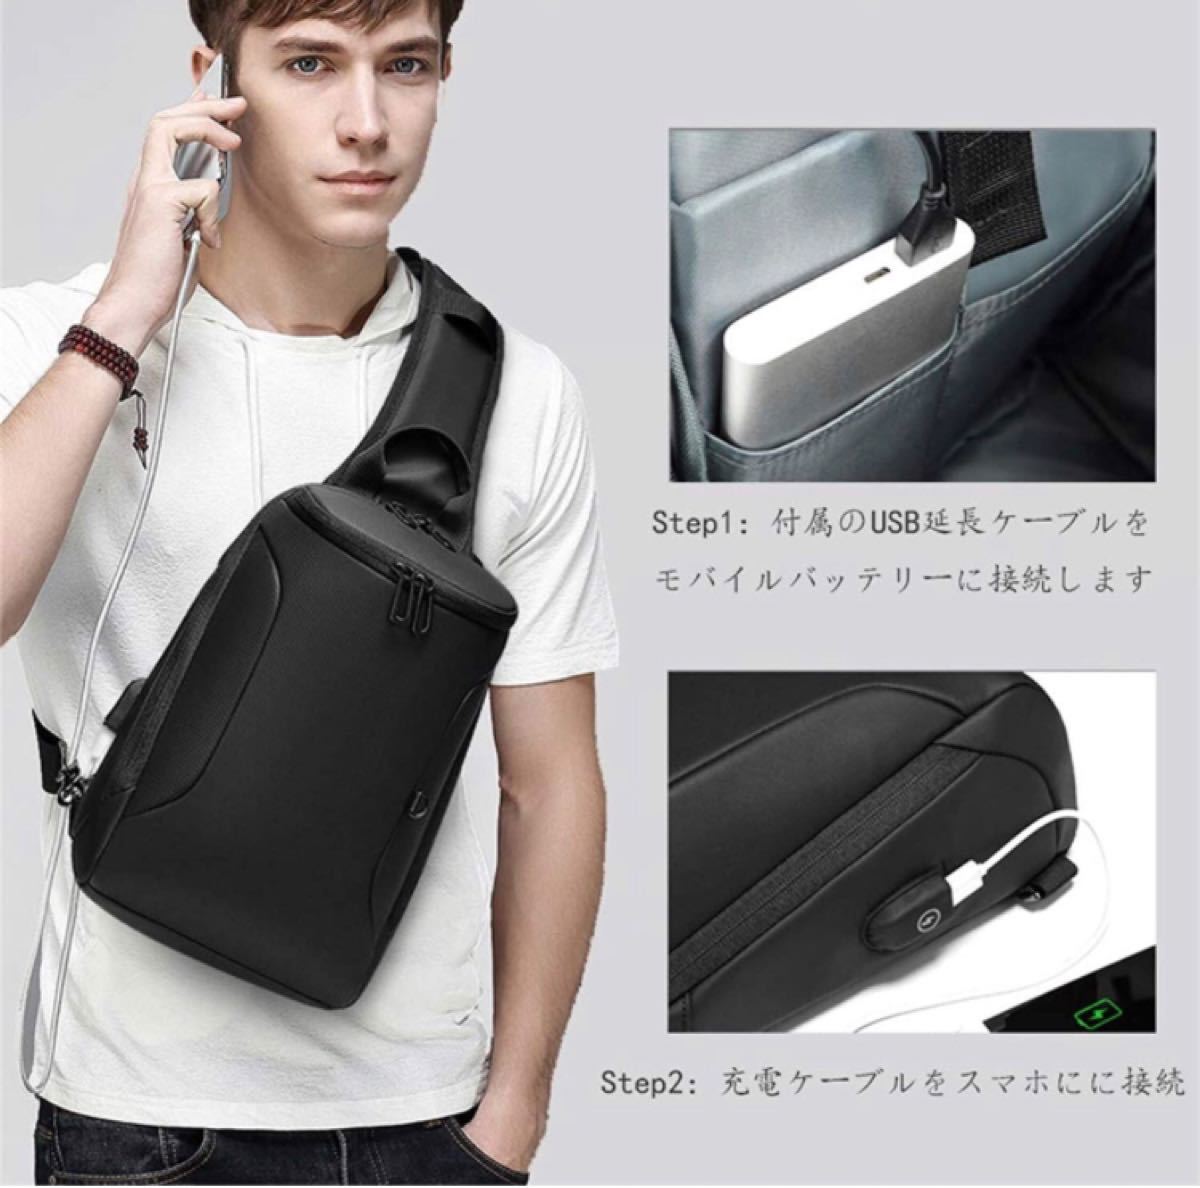 【本日限定セール】ZARA系 海外ブランド USBポート ボディバッグ ワンショルダー 肩掛け メンズバッグ 大容量  黒 